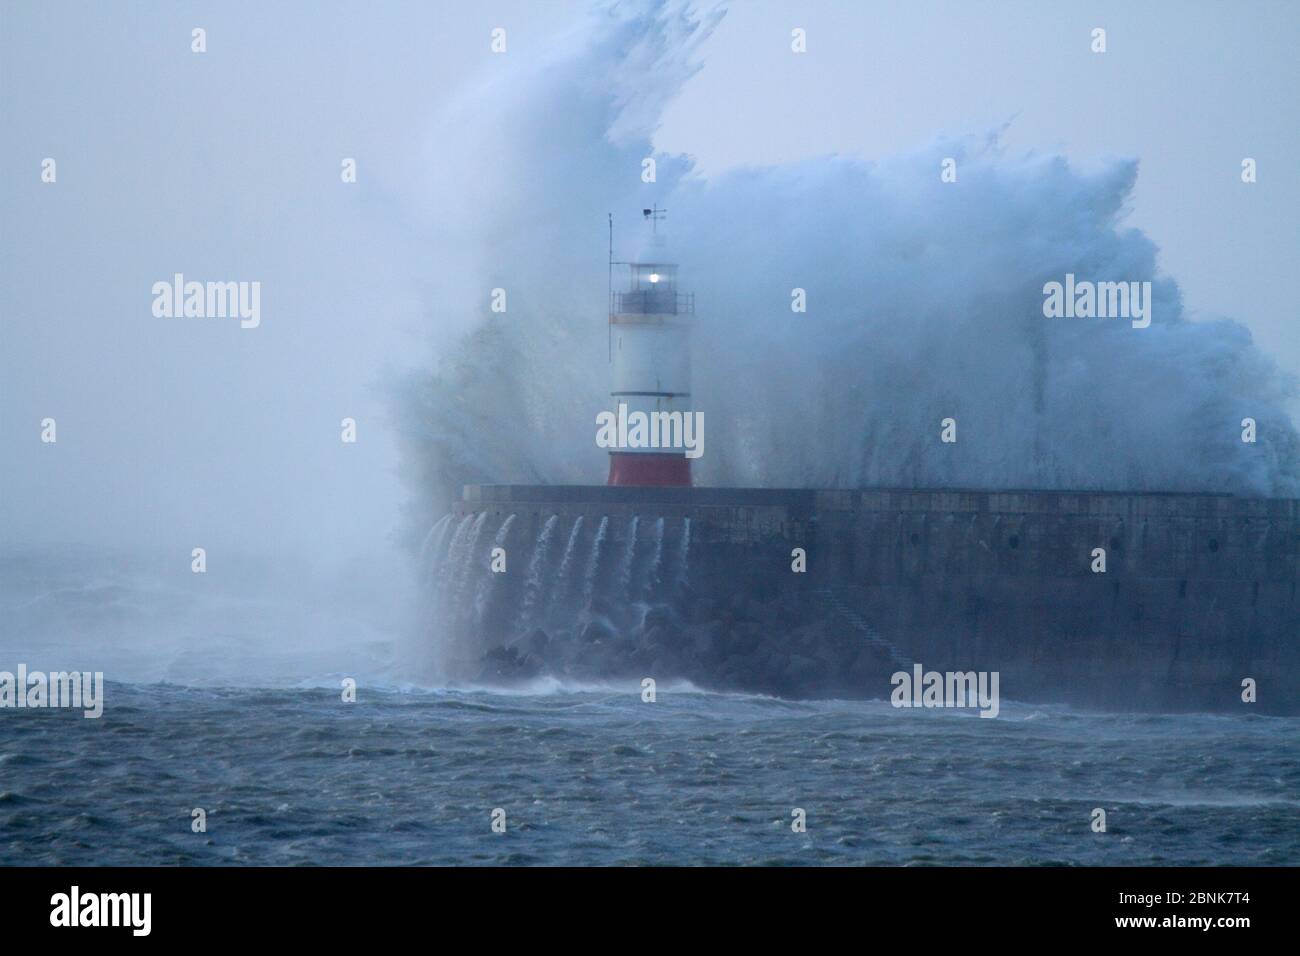 Mer de tempête dans le port de Newhaven, Sussex, Angleterre, Royaume-Uni. Octobre 2013. Banque D'Images